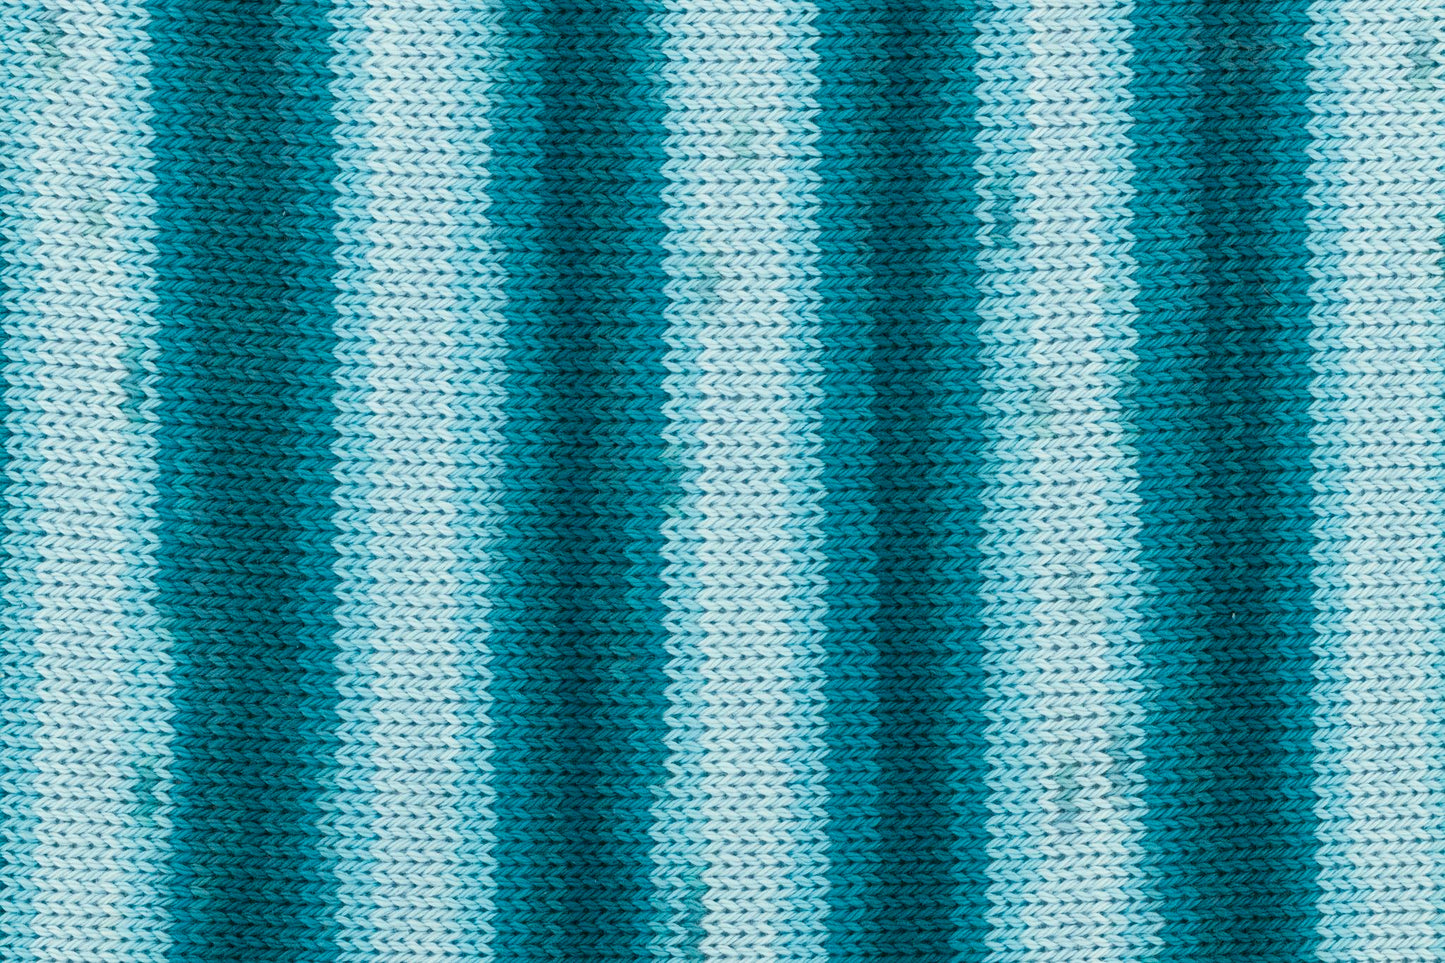 Tropic Cotton 150g, 90287, colour 6, turquoise